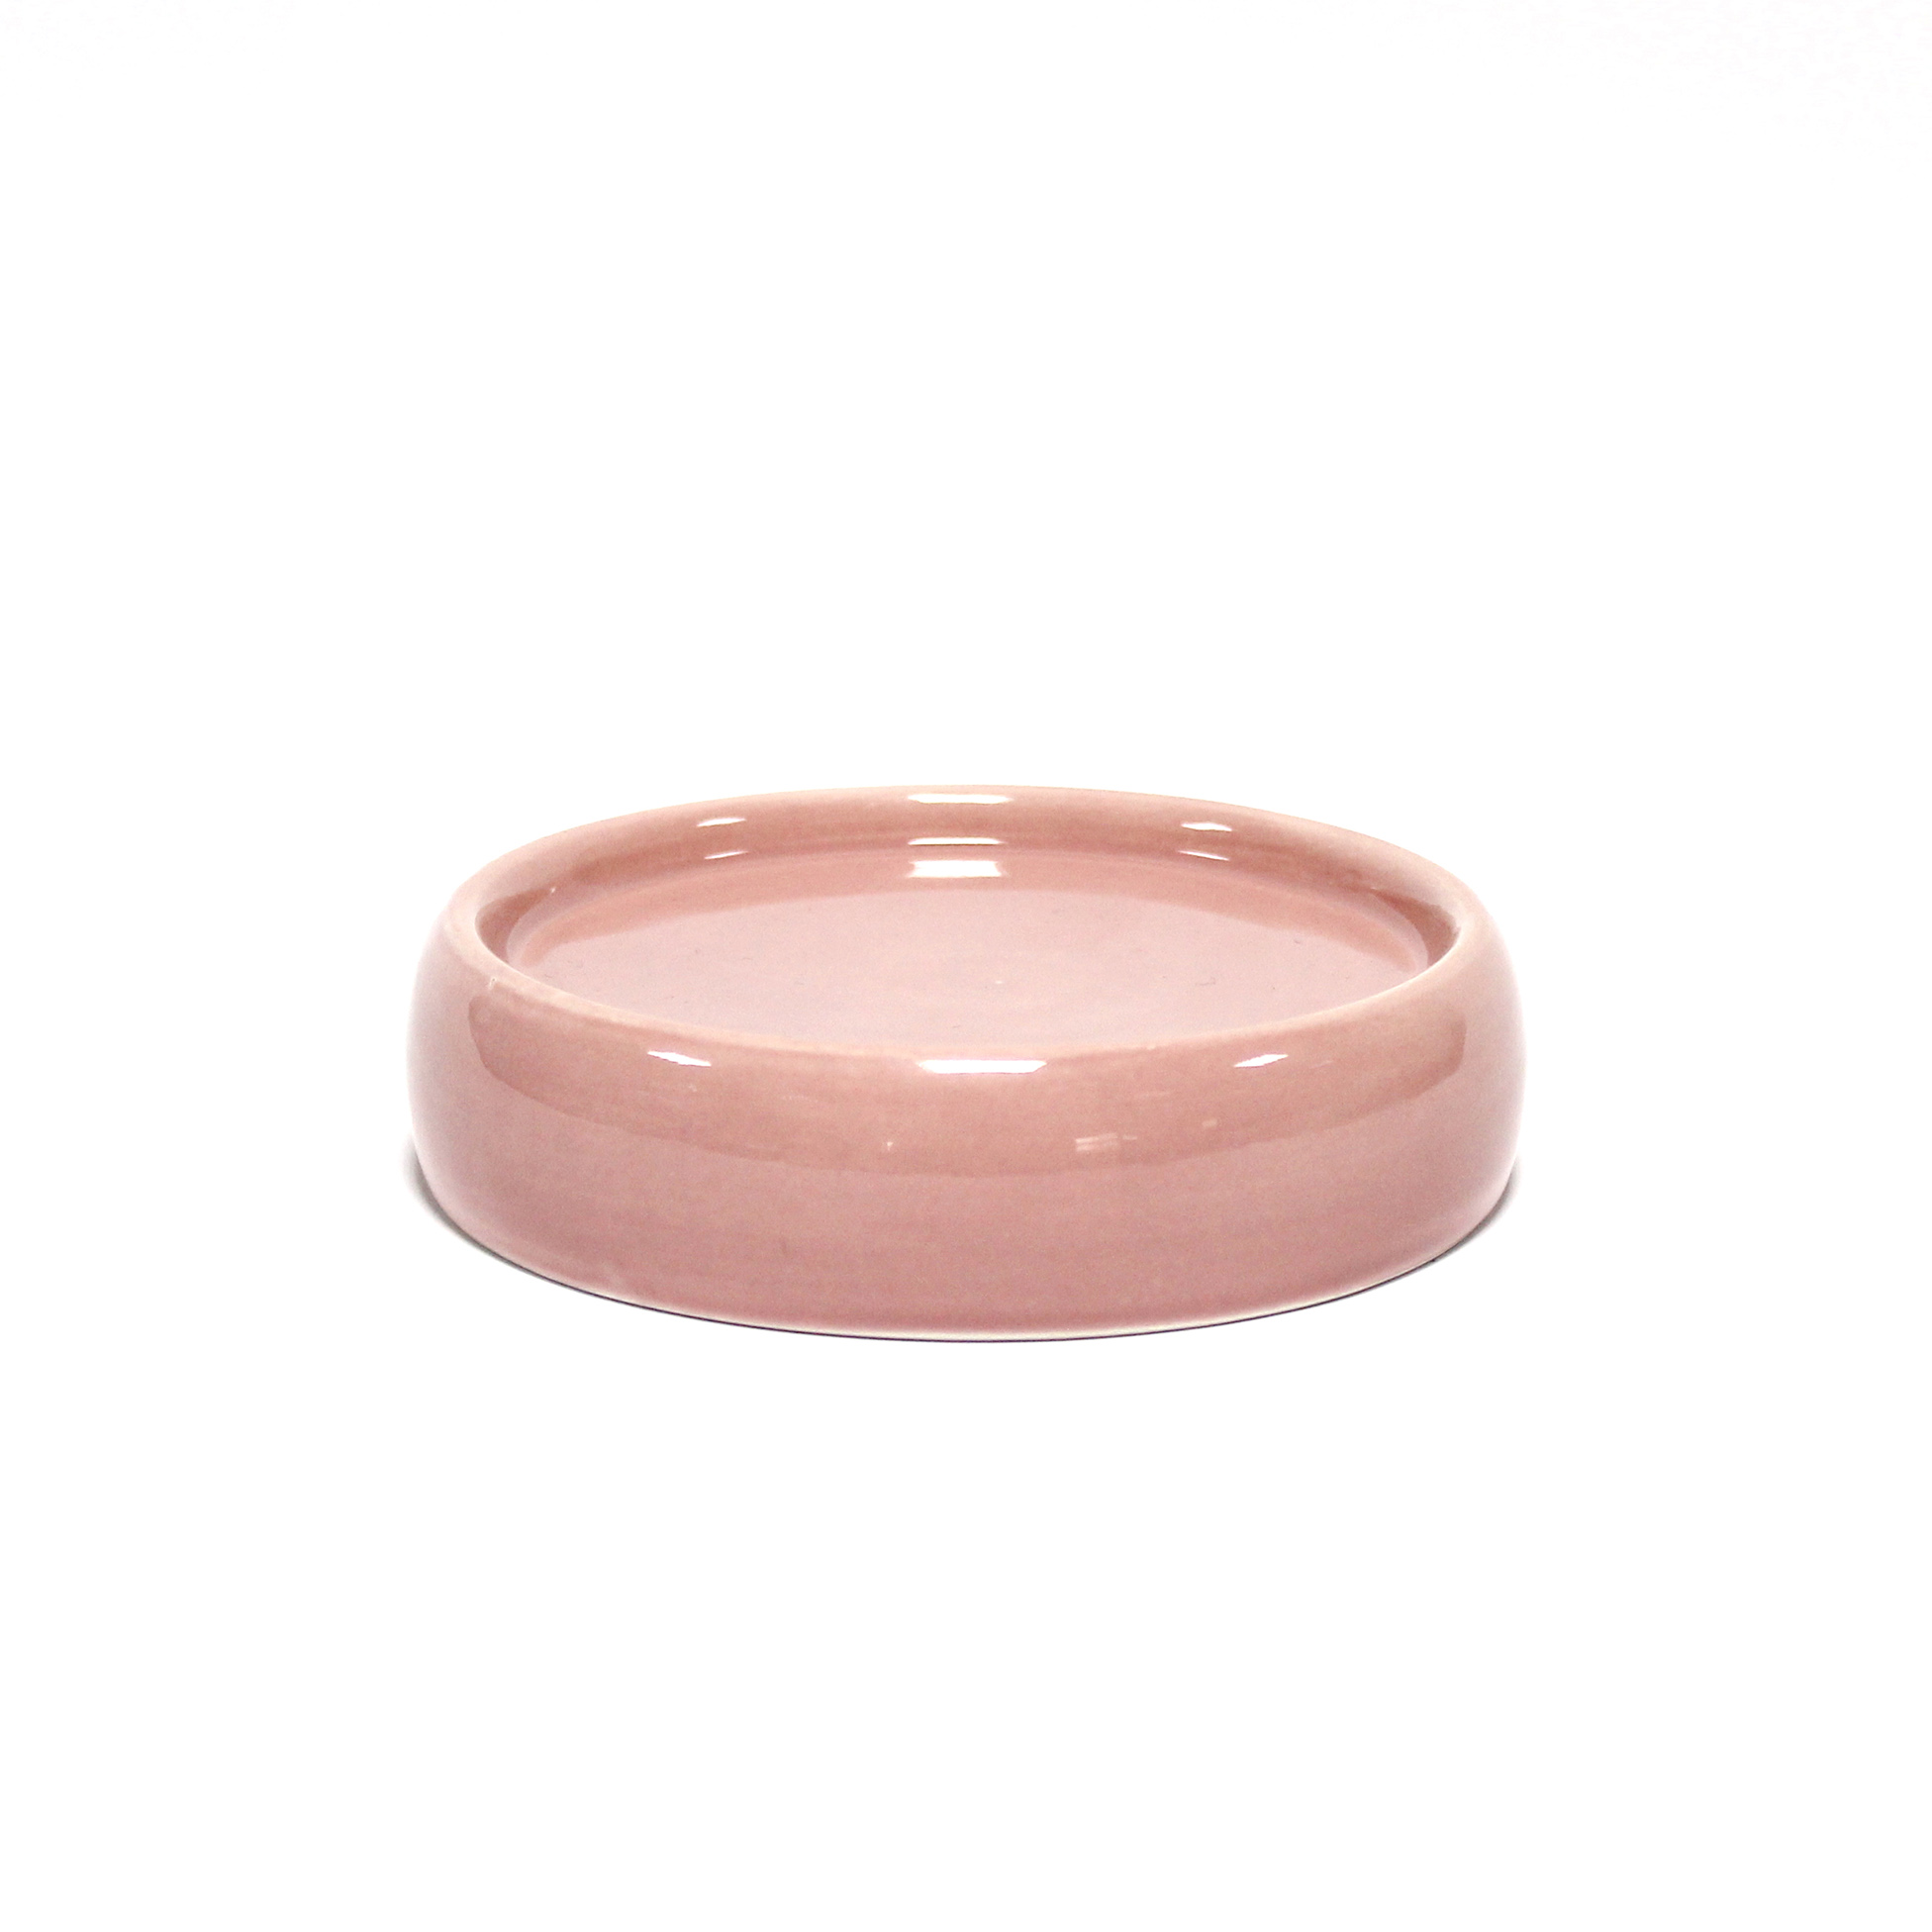 Porte savon en ceramique 3.5 x 10 cm Bulleas rose poudre